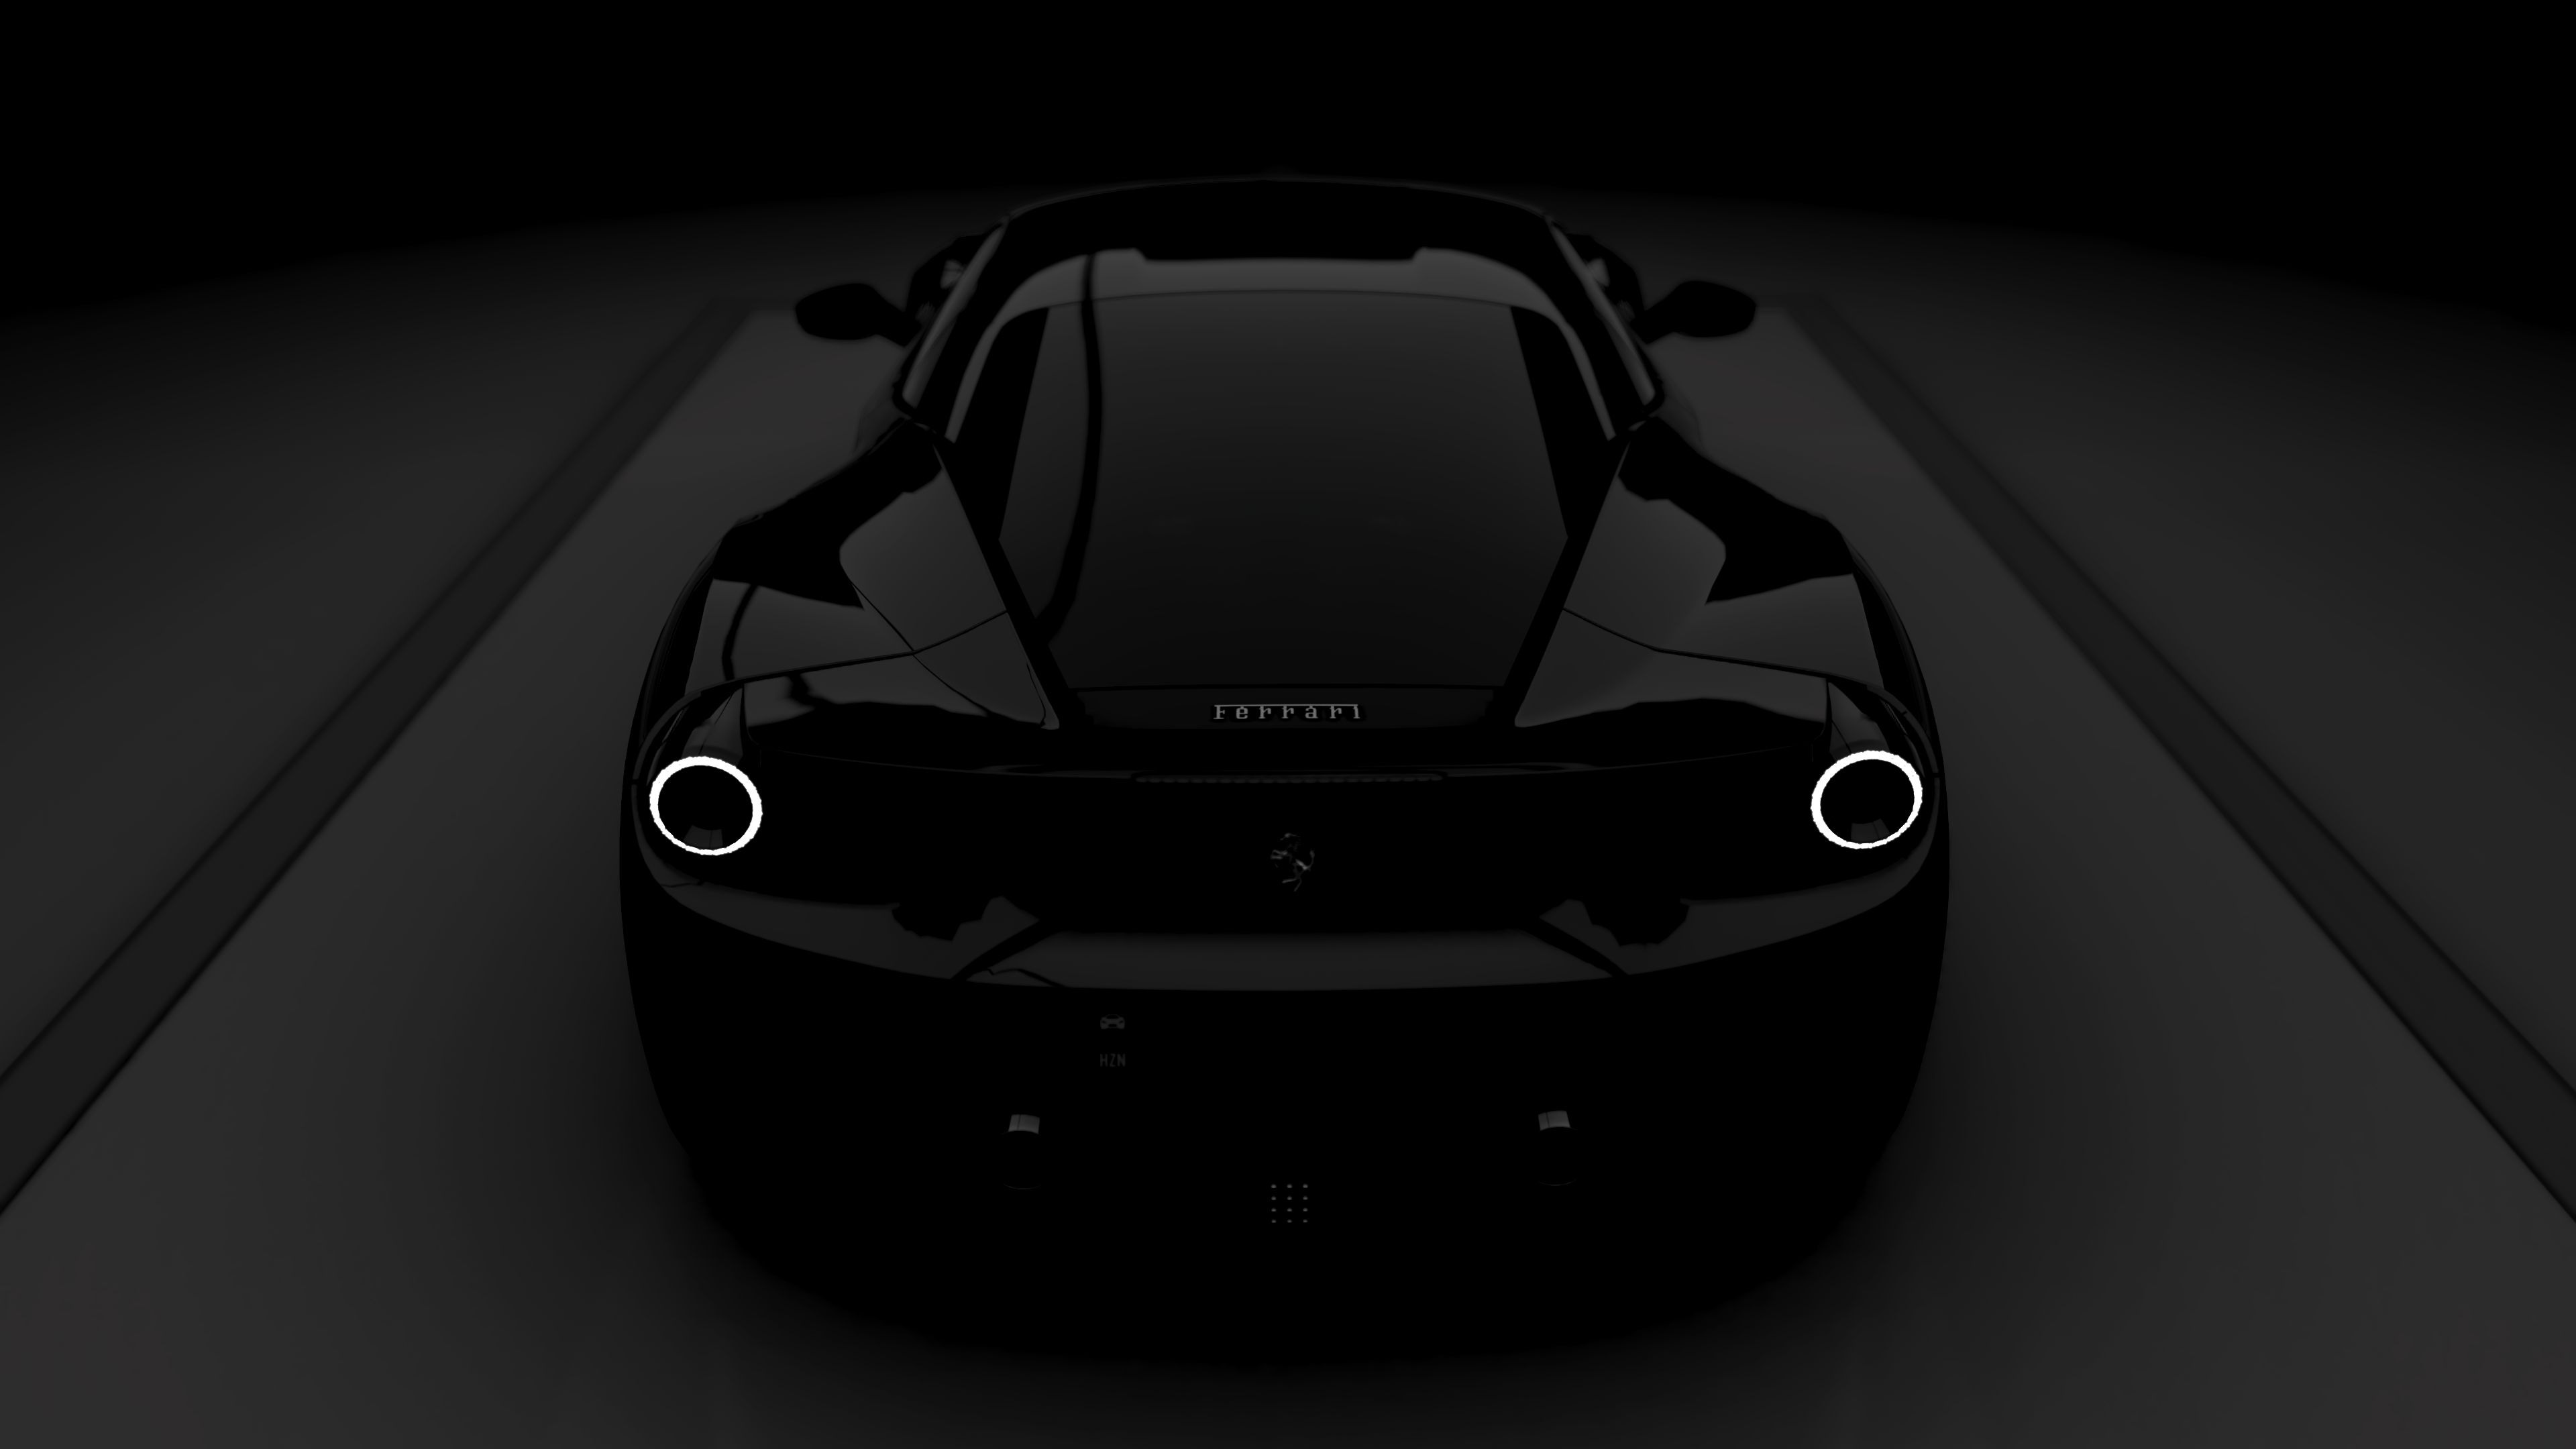 General 3840x2160 Forza Horizon 4 XboxOneX video games car Ferrari dark